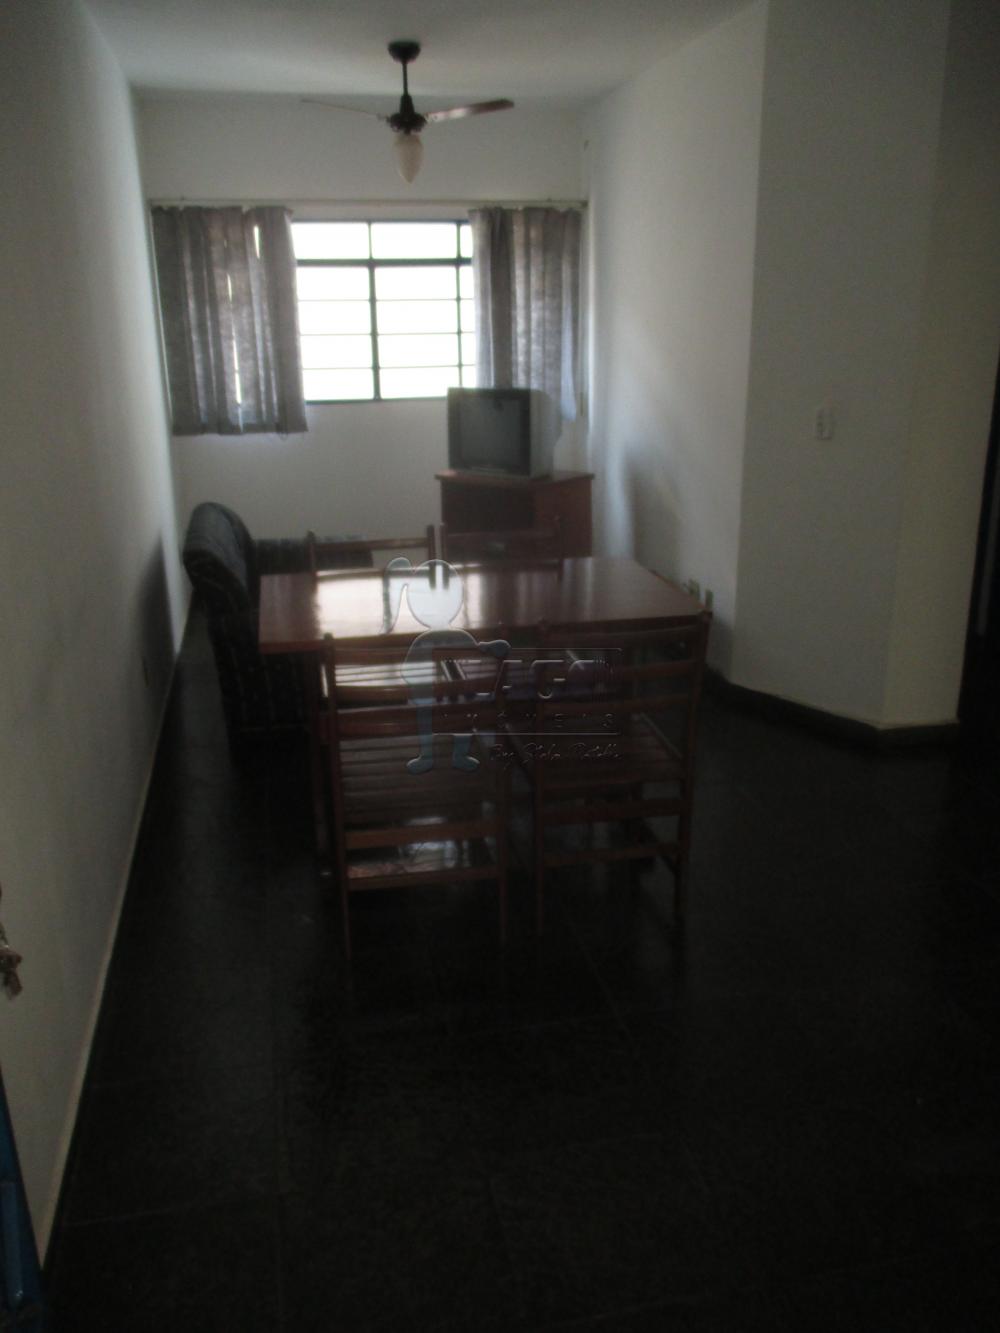 Alugar Apartamentos / Kitchenet / Flat em Ribeirão Preto R$ 750,00 - Foto 2